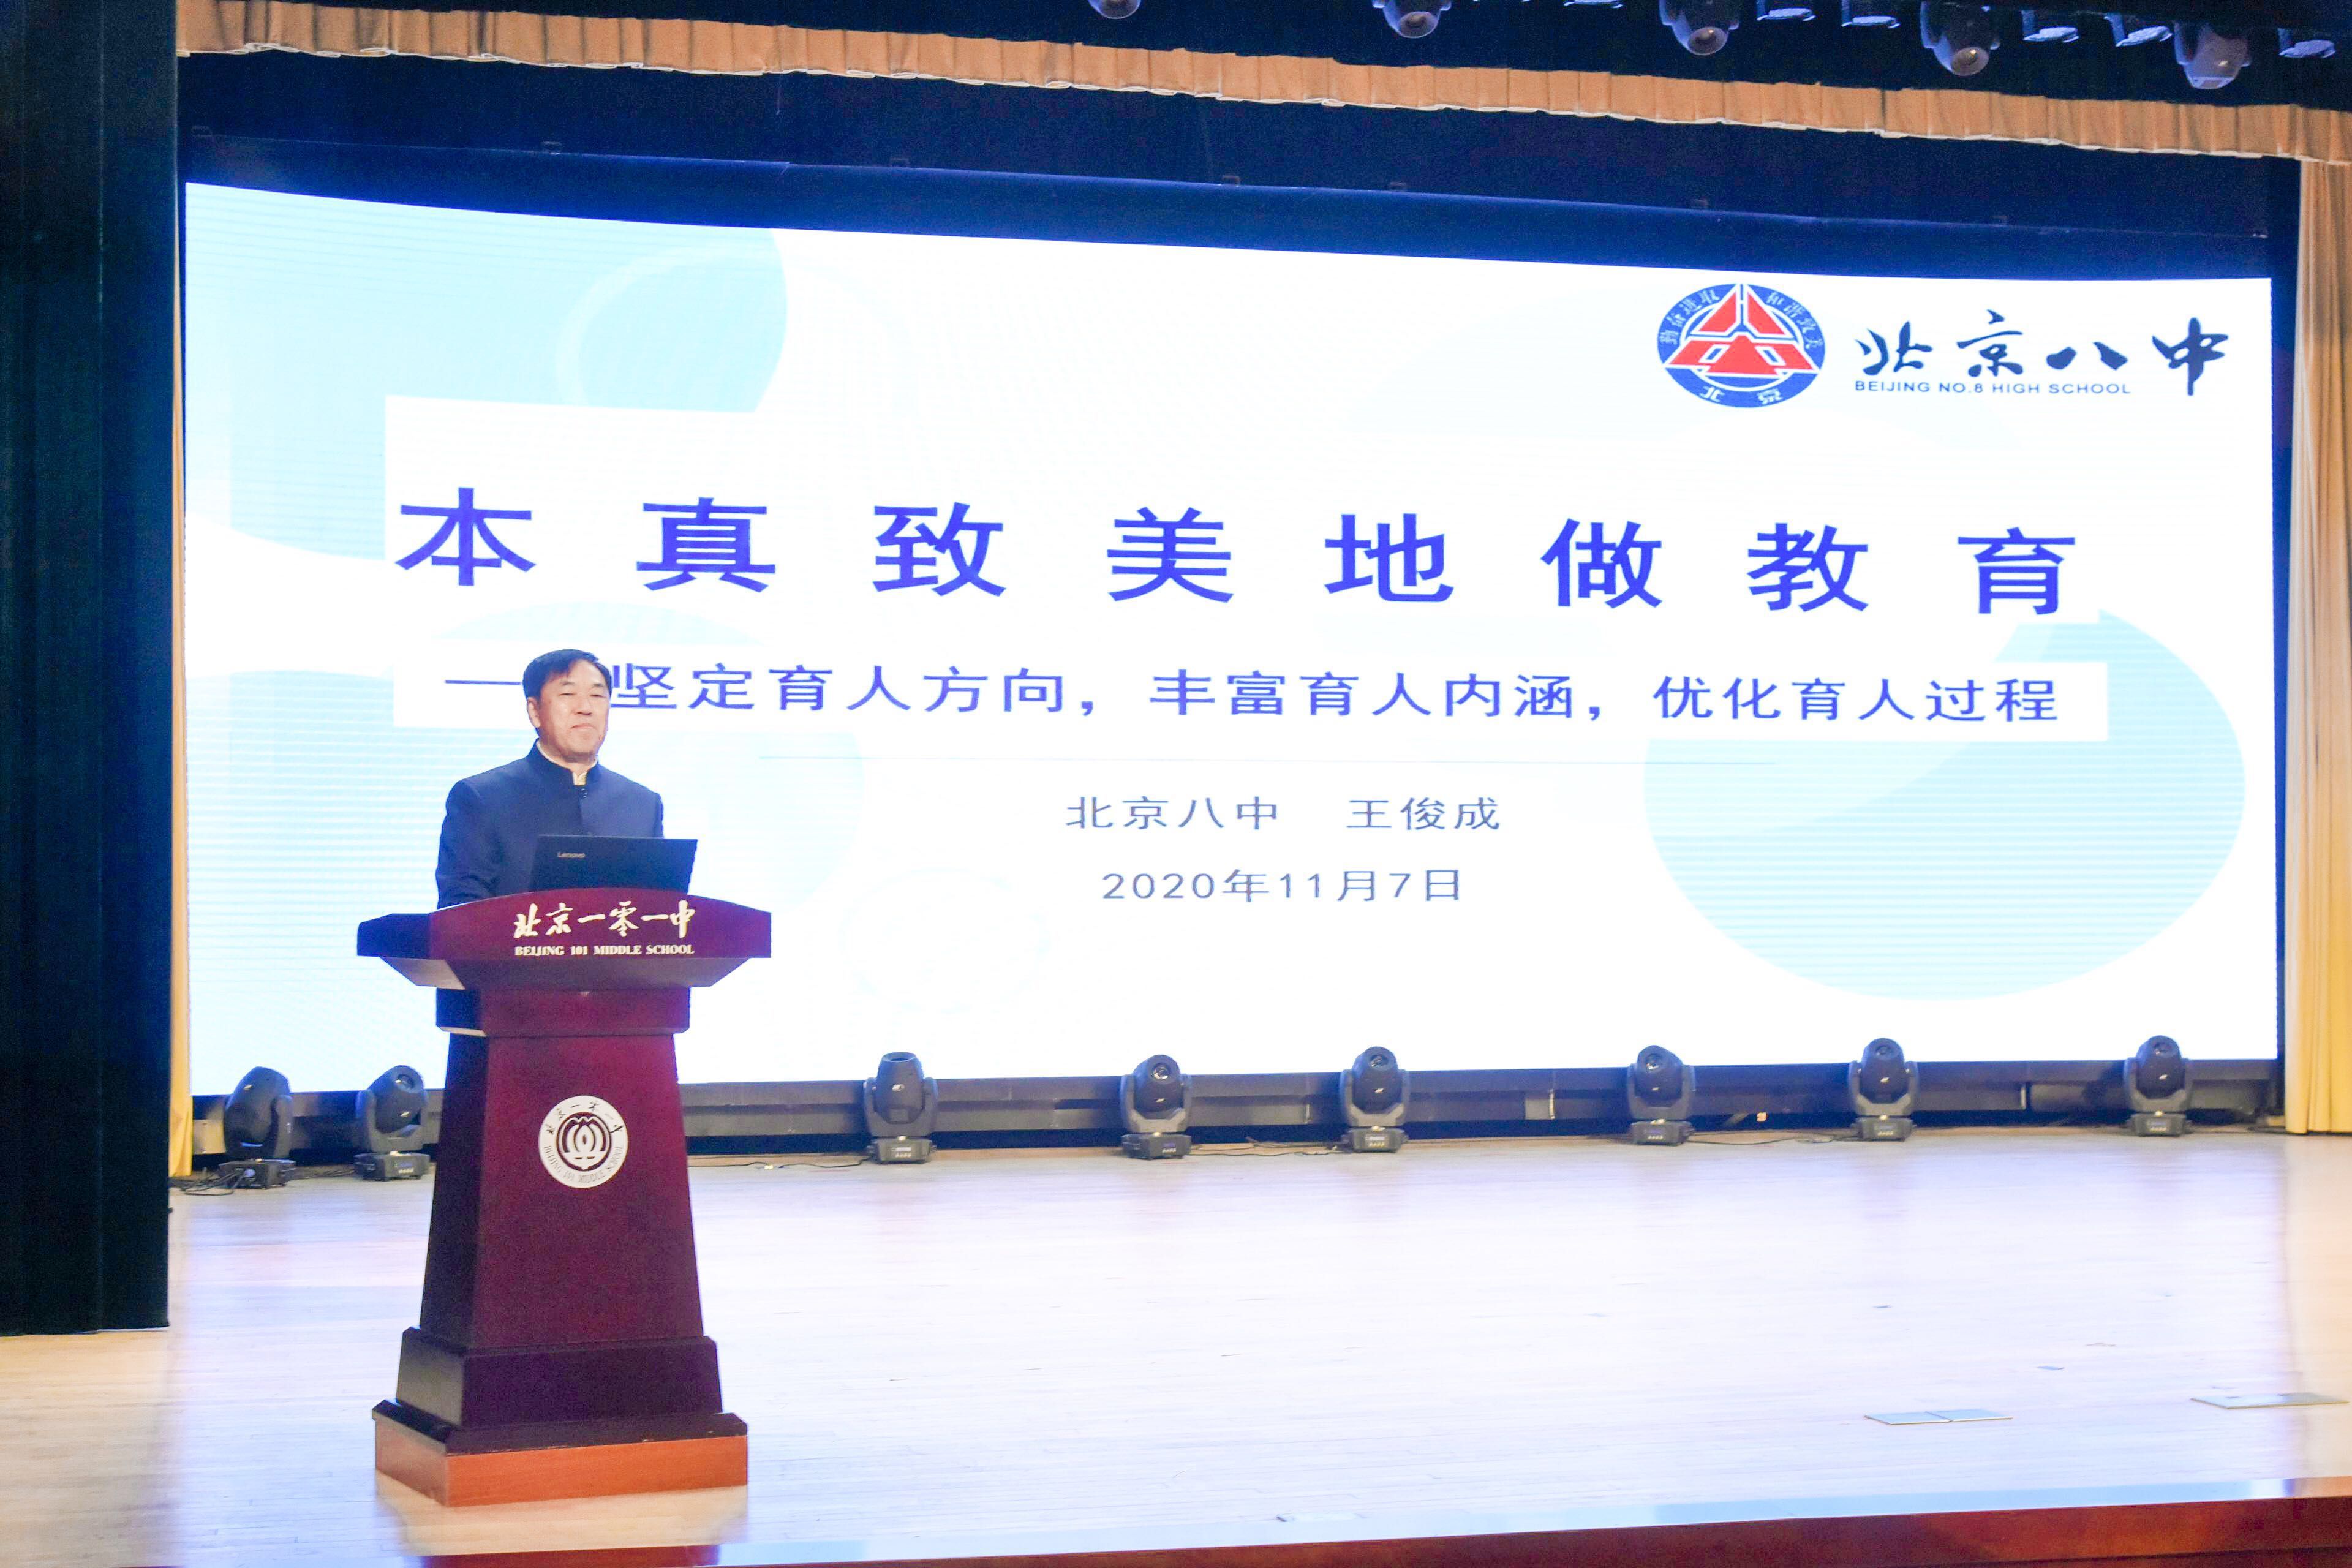 王俊成在第七届全国中小学校长论坛上发表演讲。